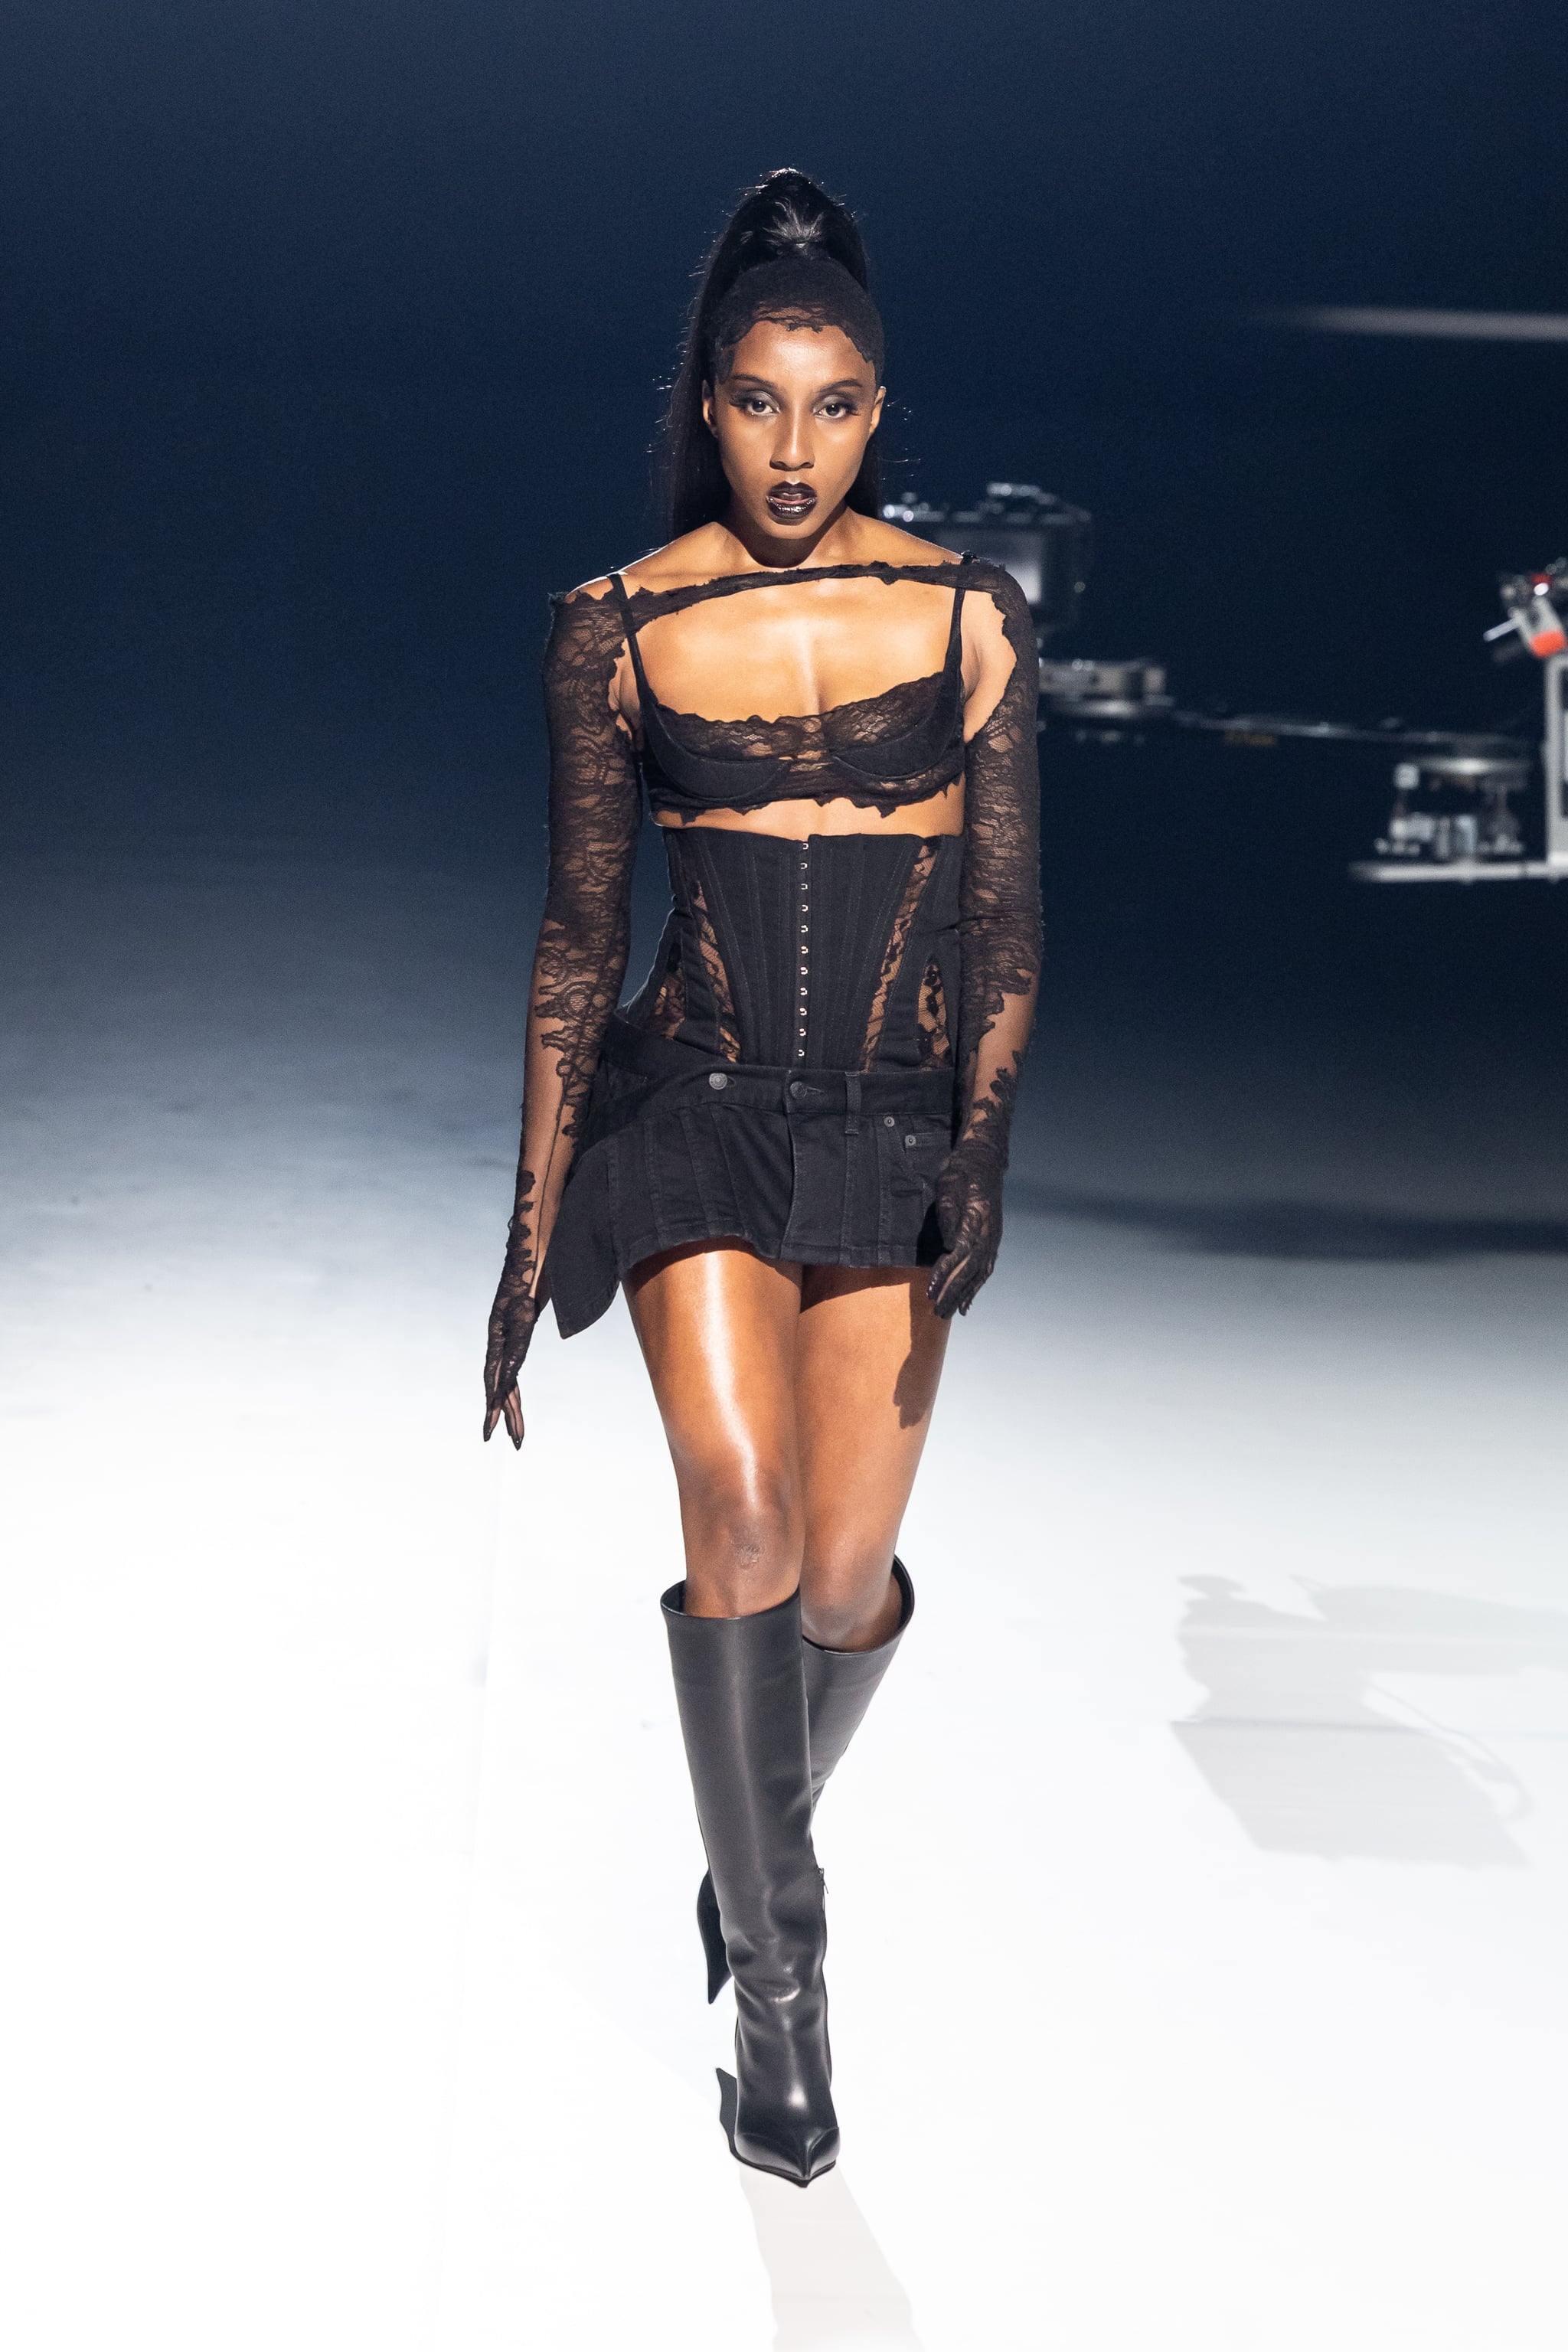 Ziwe Makes Her Runway Debut at Paris Fashion Week